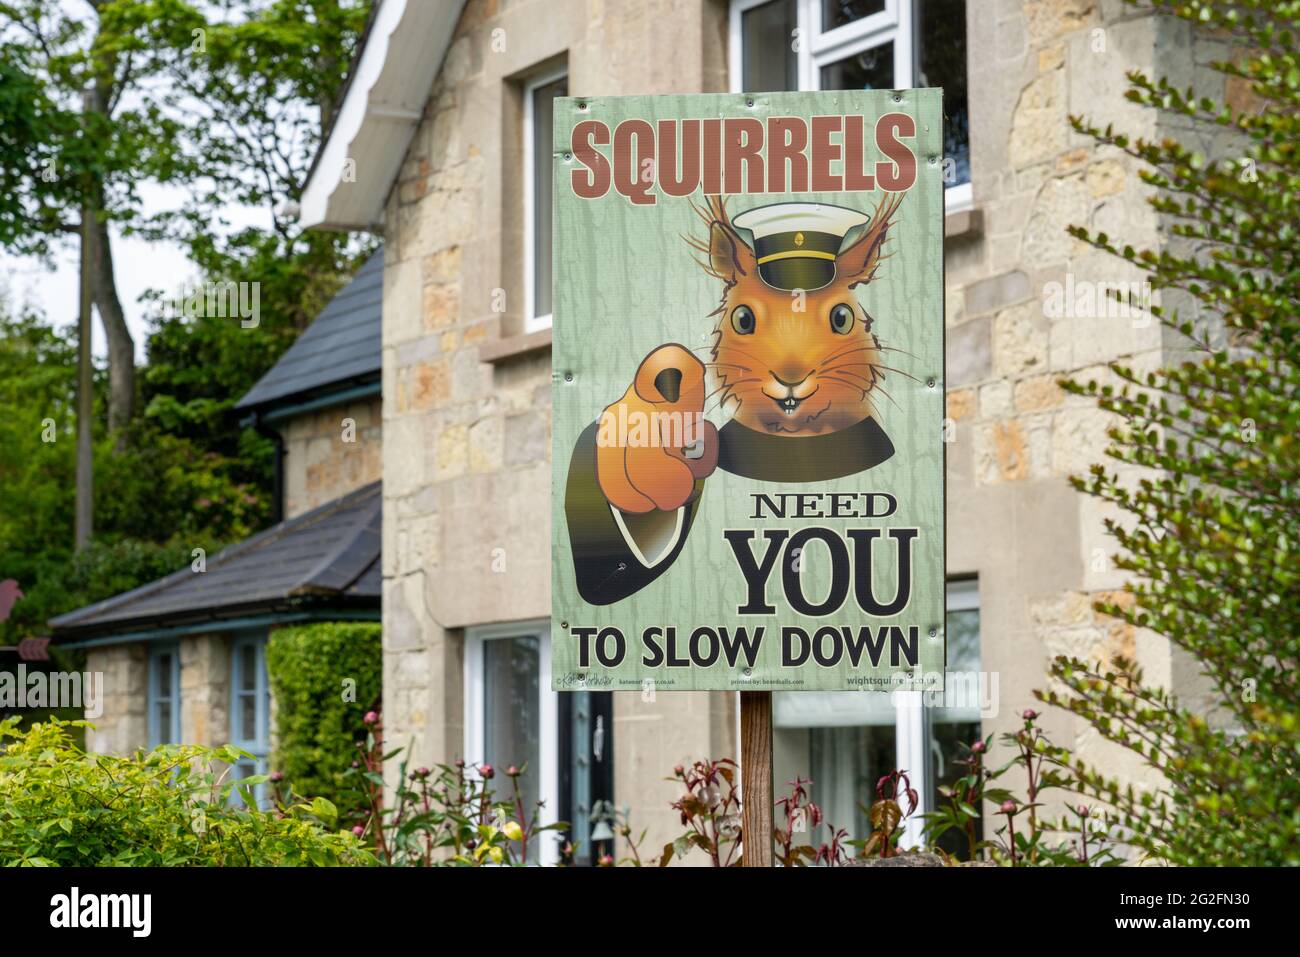 Panneau amusant sur l'île de Wight dans le Hampshire Royaume-Uni avec Lord Kitchener style écureuil rouge commandant des pilotes - 'les excentriques ont besoin de vous ralentir' Banque D'Images